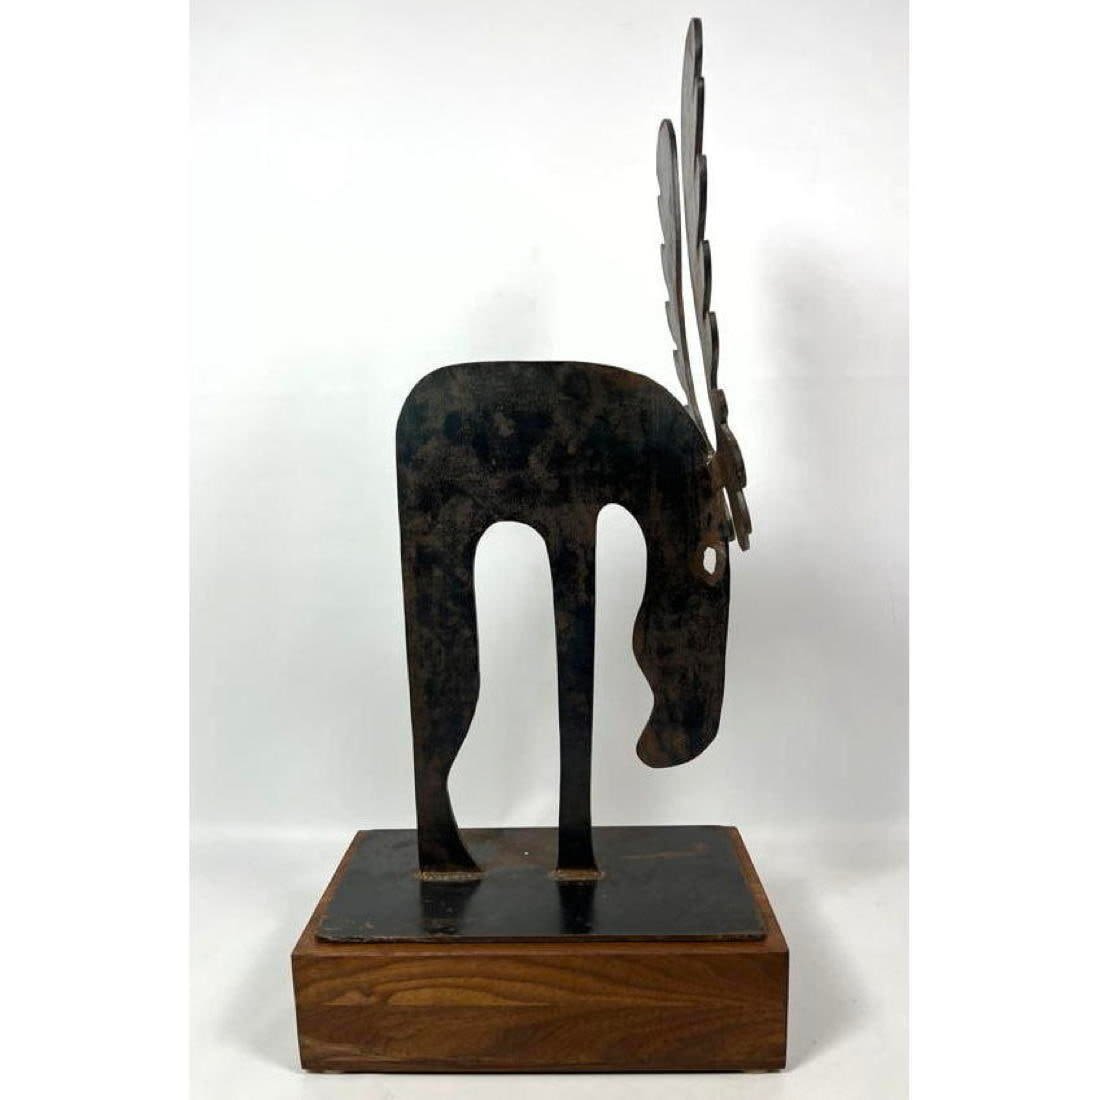 Brutalist Welded Moose Sculpture 362a79